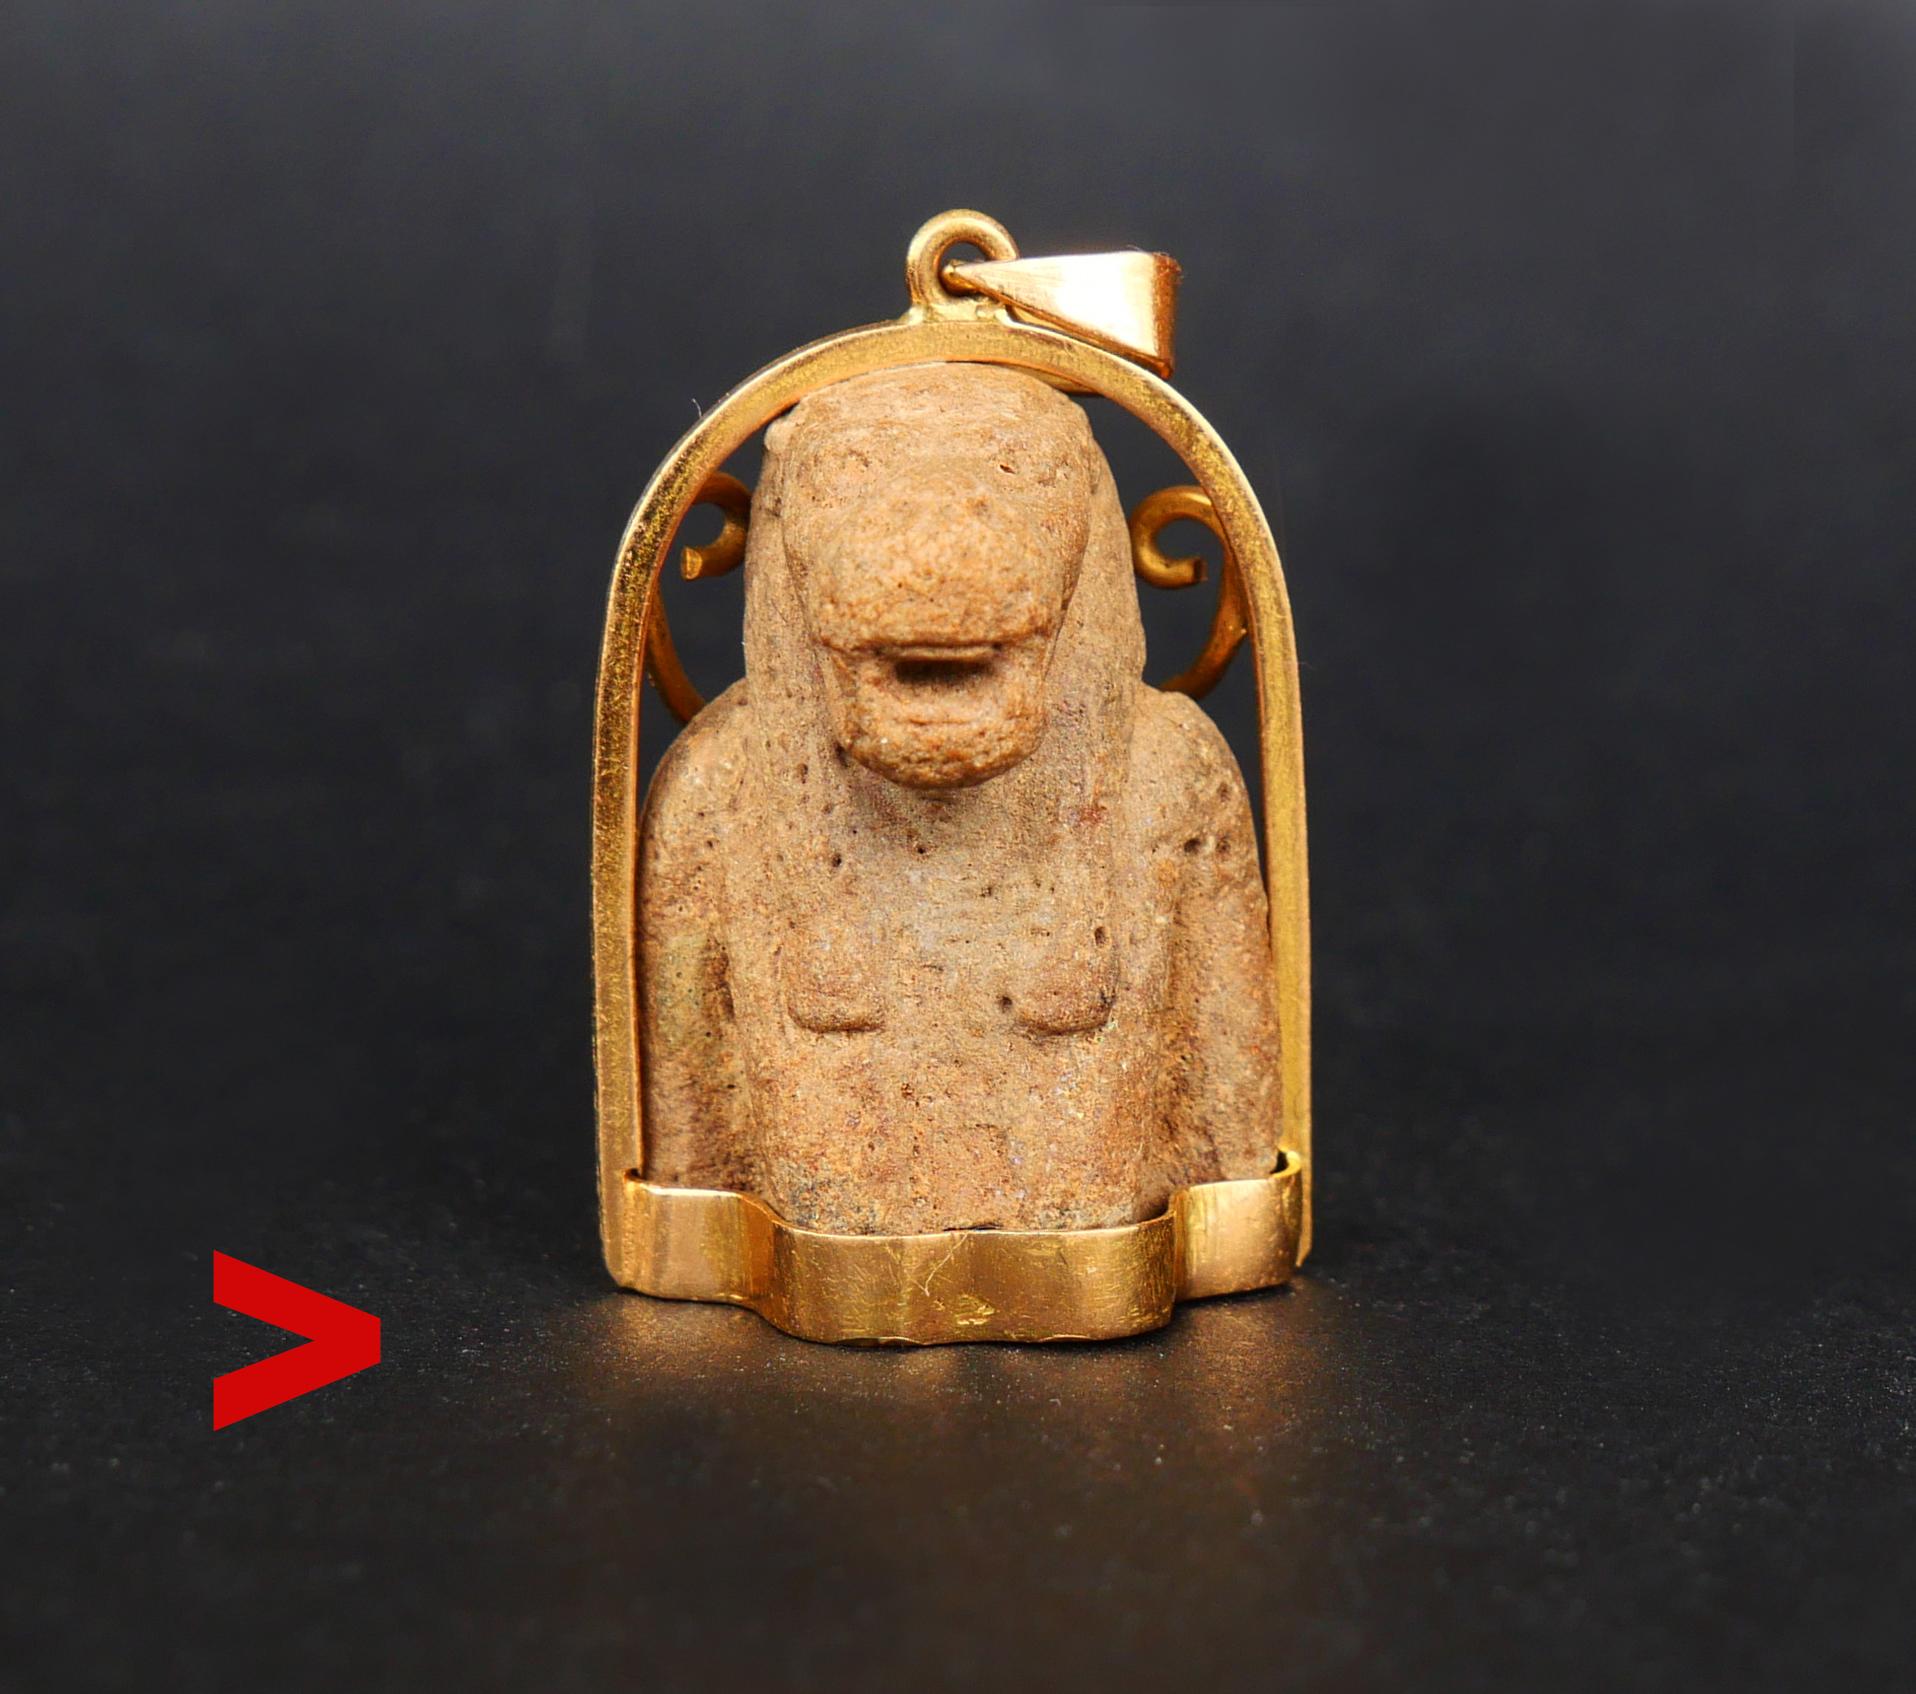 
Pendentif original de Taweret, déesse protectrice de l'accouchement et de la fertilité de l'Égypte ancienne, datant d'au moins 2000 ans (ou beaucoup plus ancien), monté dans une monture en or massif 18 carats. Le matériau est de la fiance ou de la